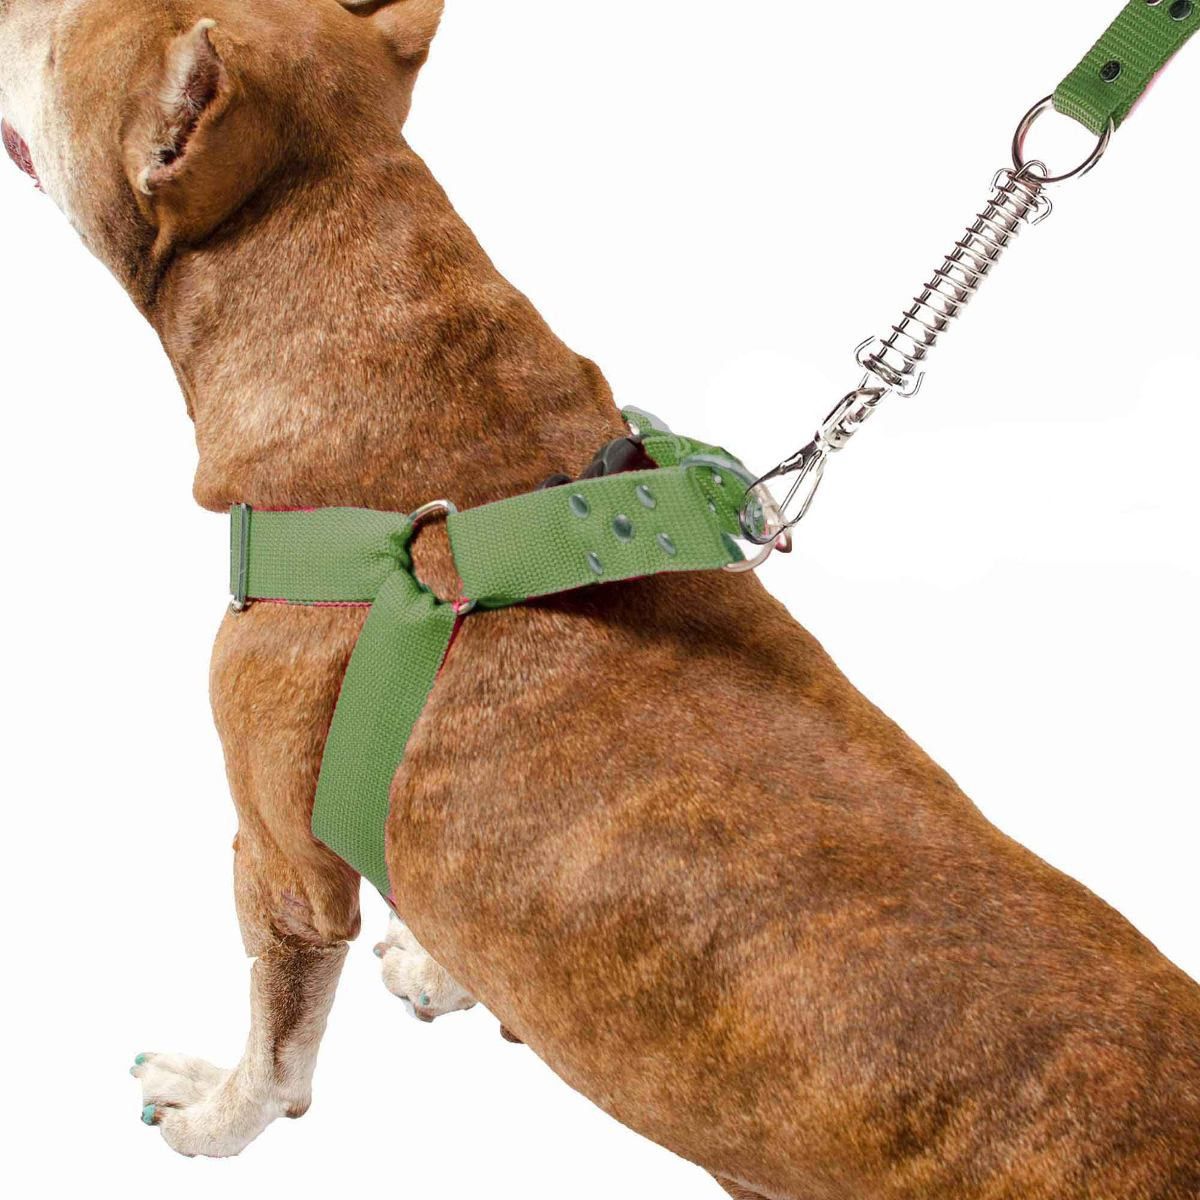  Coleira Peitoral Guia Cinto Segurança Cachorro Doberman Pitbull Anti Puxao - M Verde